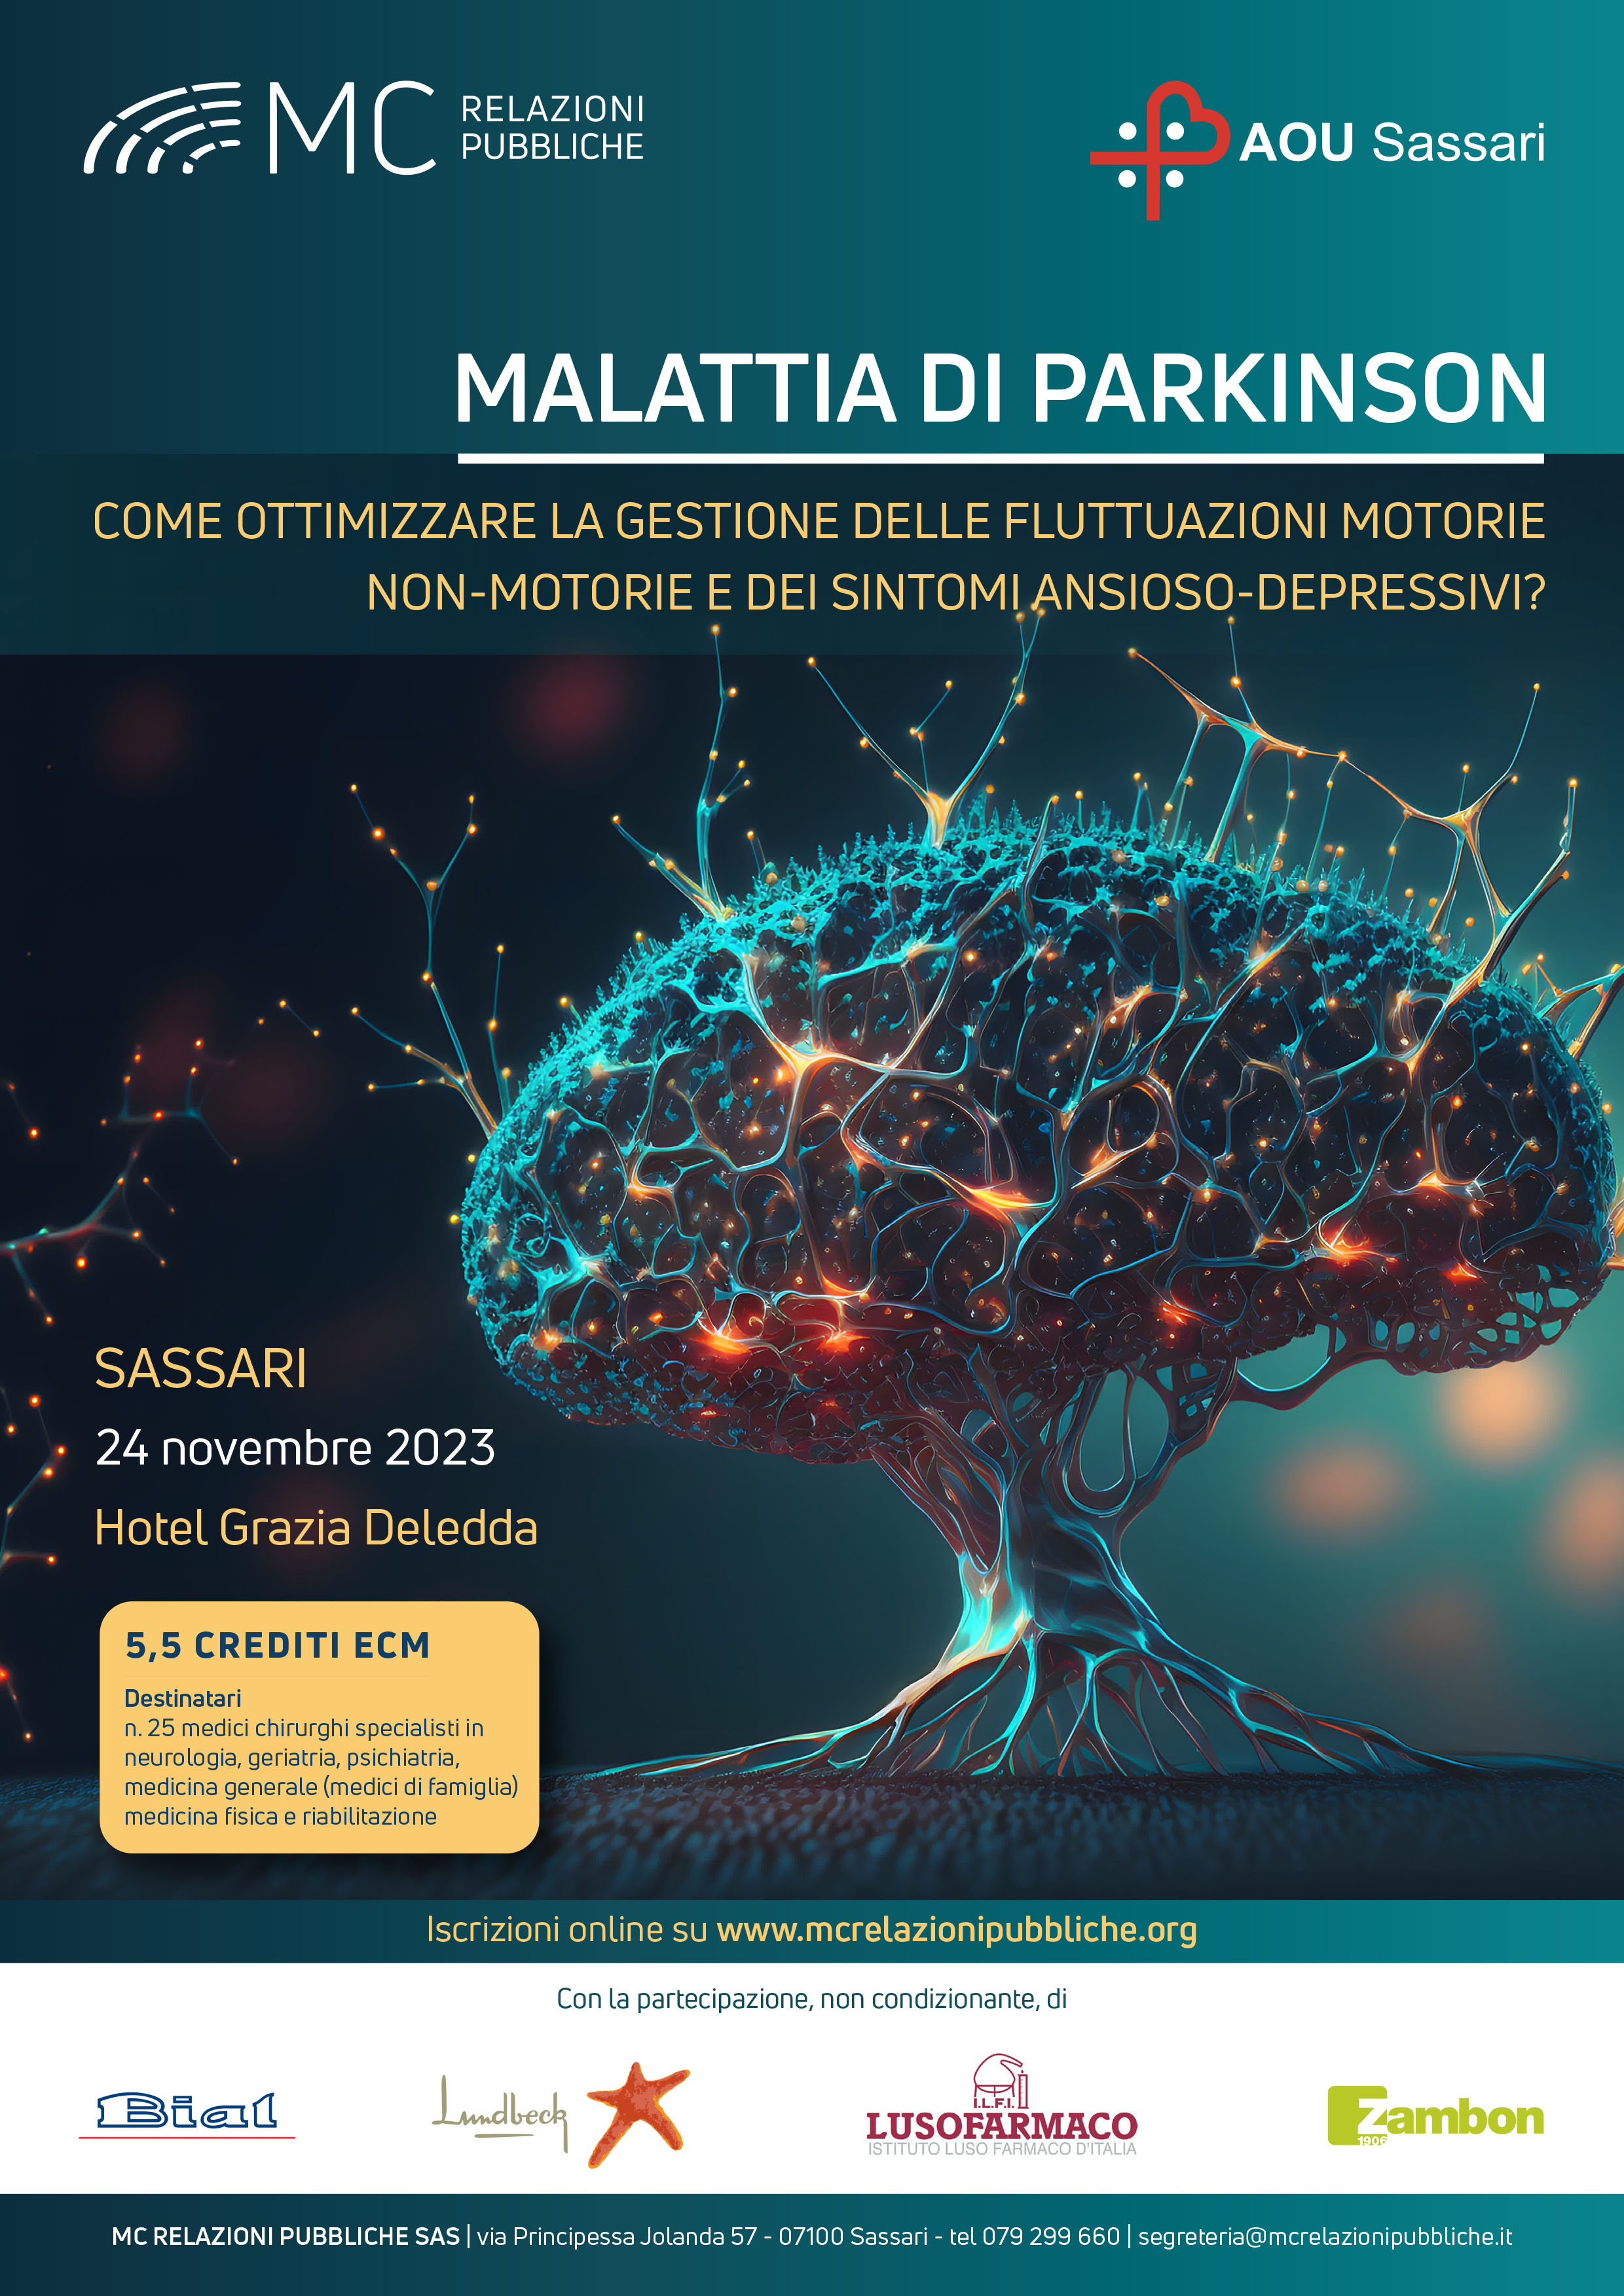 Malattia di Parkinson. Come ottimizzare la gestione delle fluttuazioni motorie, non-motorie e dei sintomi ansioso-depressivi? - 24 novembre 2023